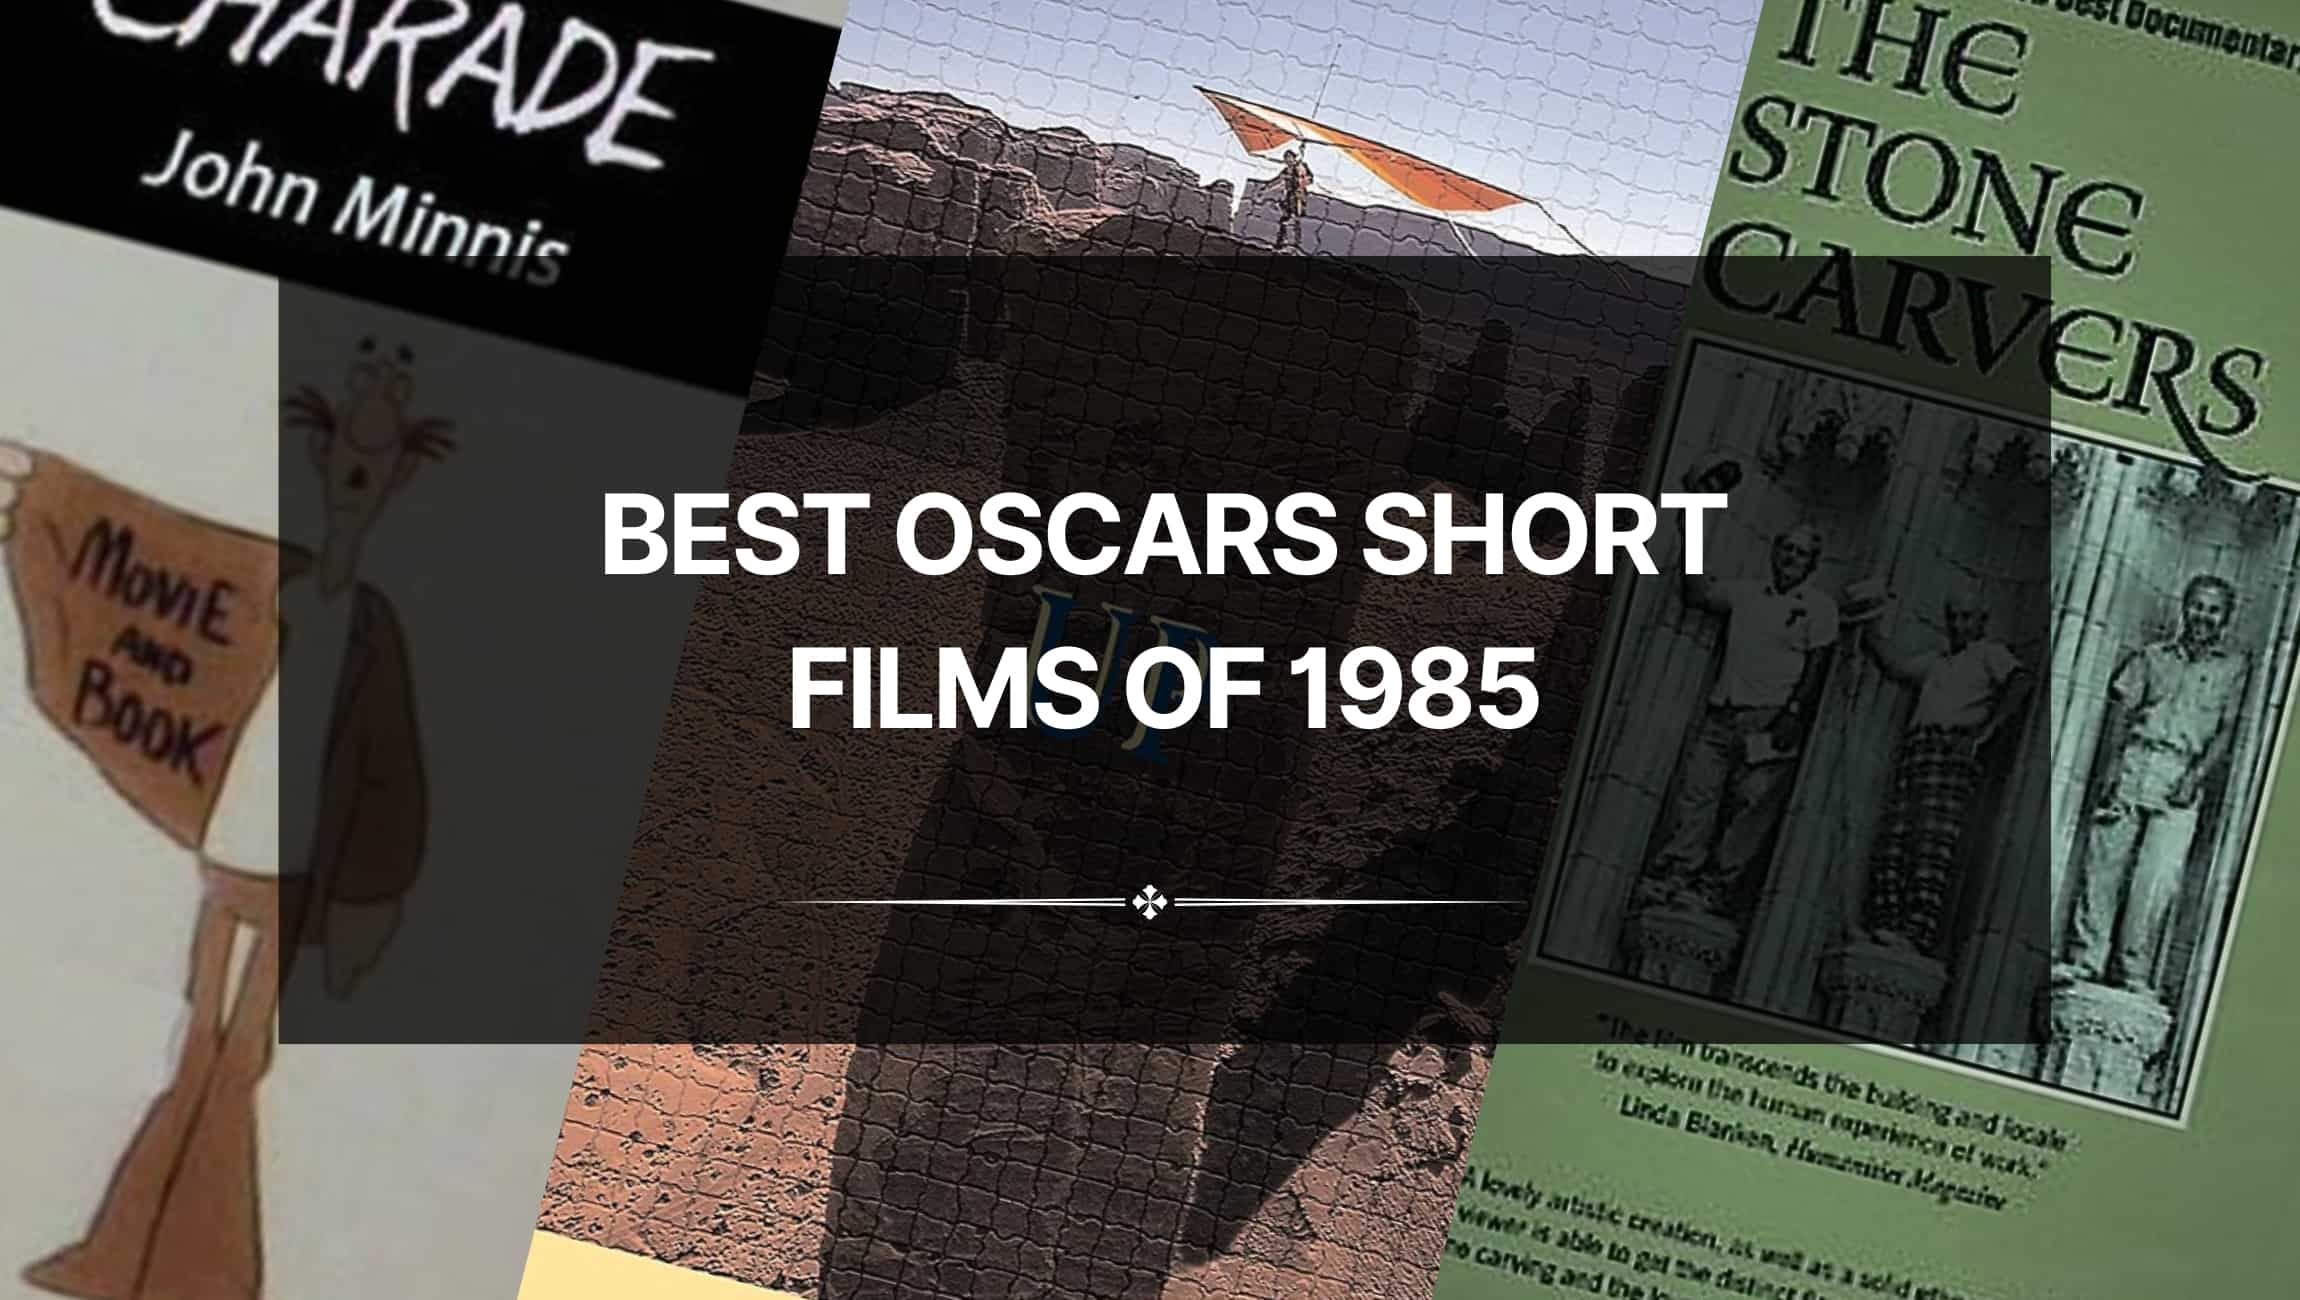 Best Oscars Short Films of 1985: Scintillating Cinema